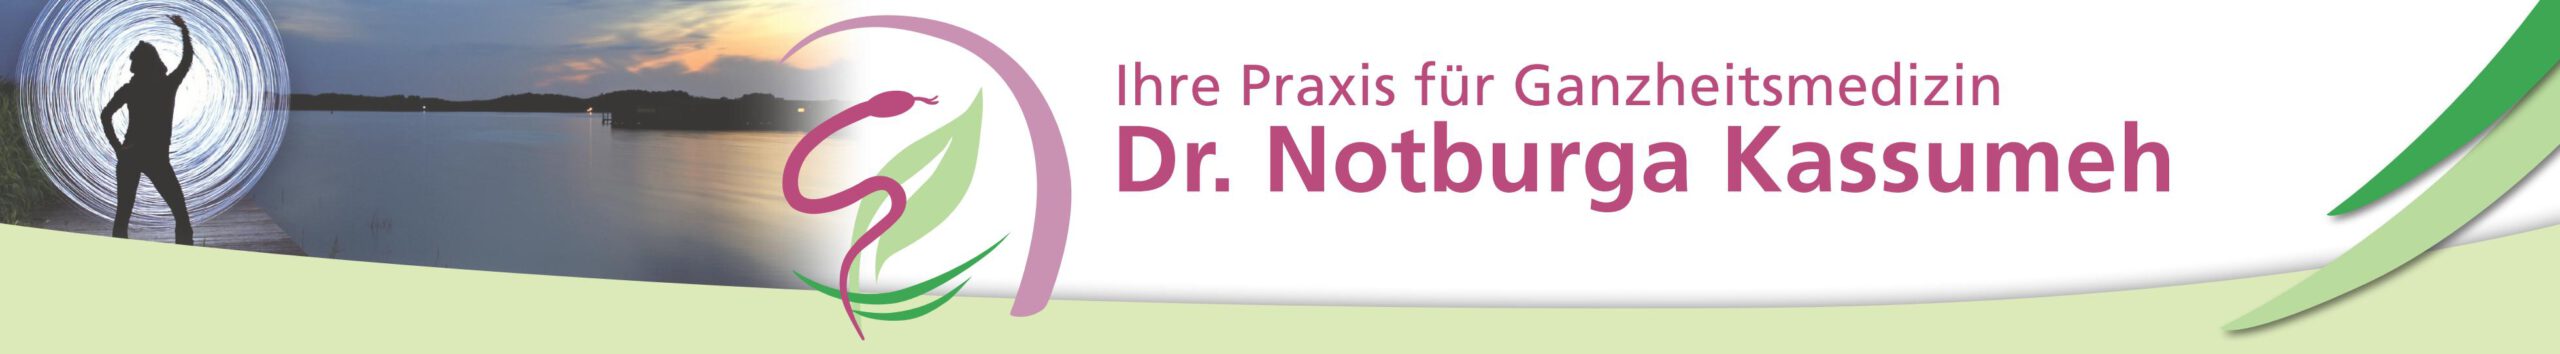 Dr. Notburga Kassumeh Praxis für Ganzheitsmedizin in Linz